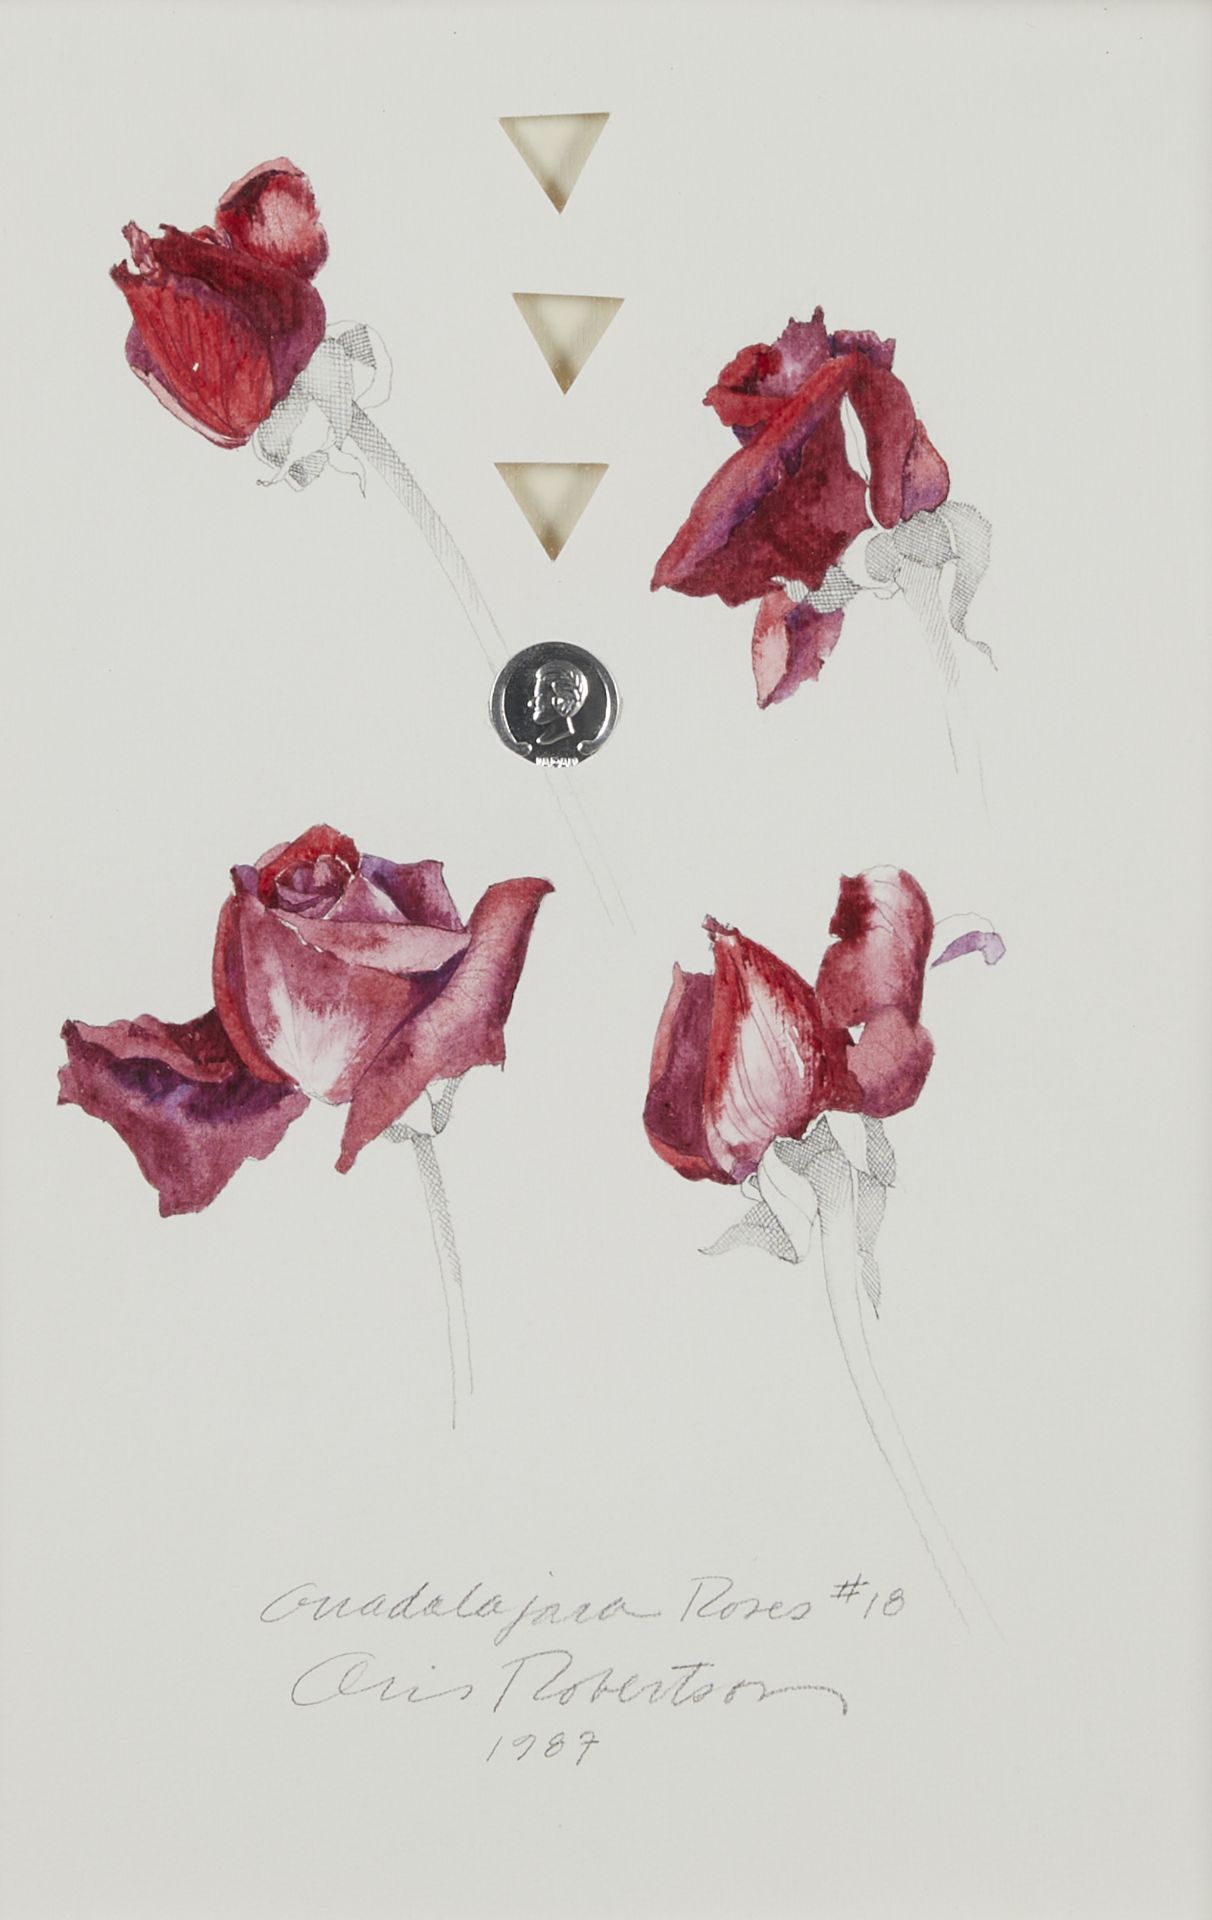 Oris Robertson "Guadalajara Roses #18" Mixed Media